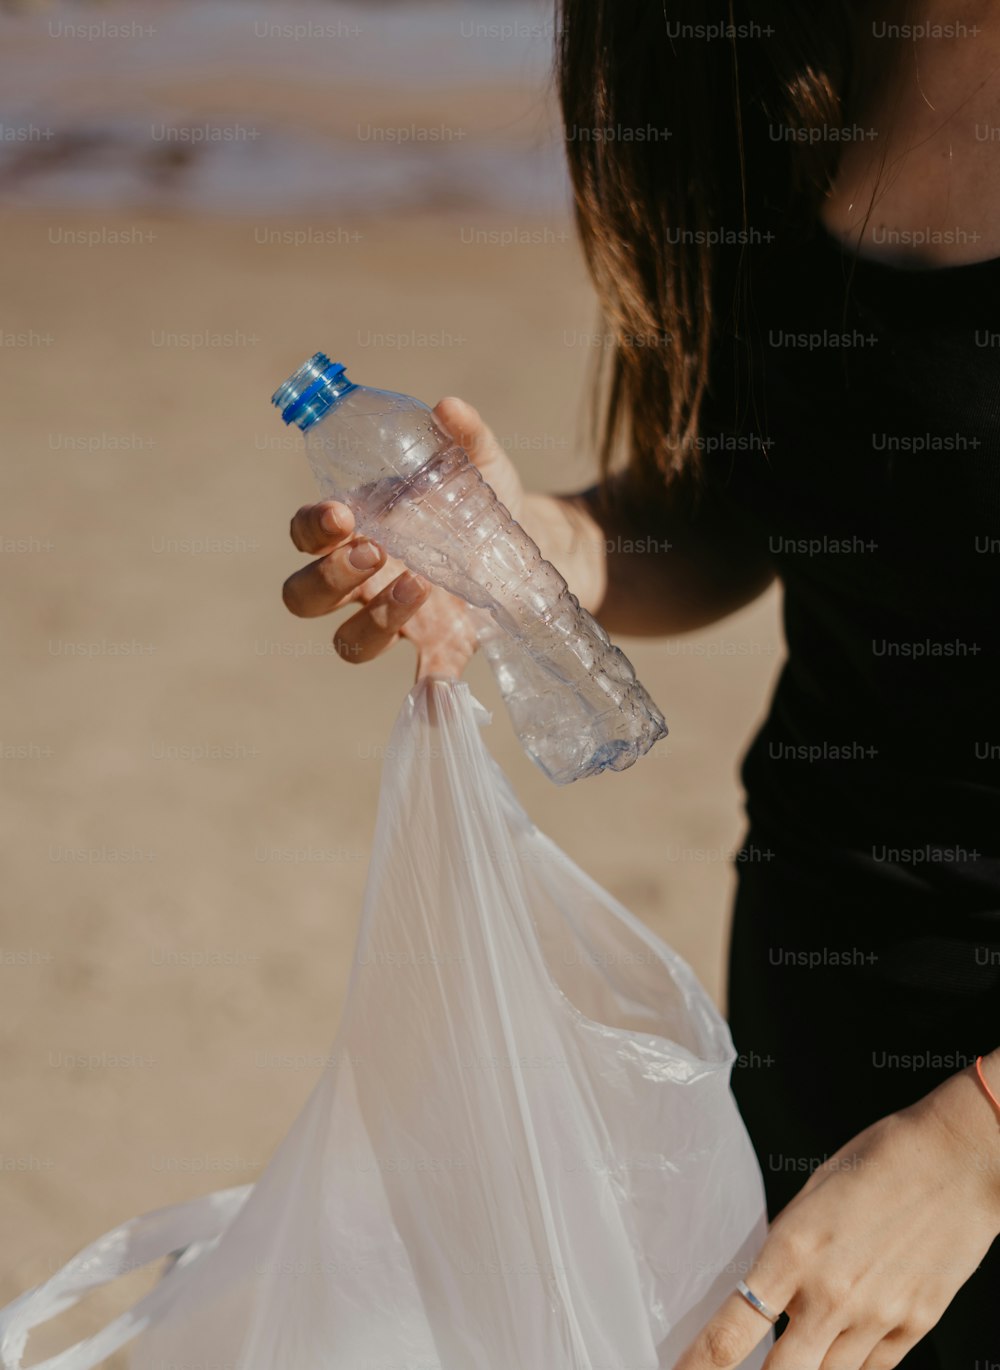 Niña sosteniendo botellas de agua de plástico para su reciclaje